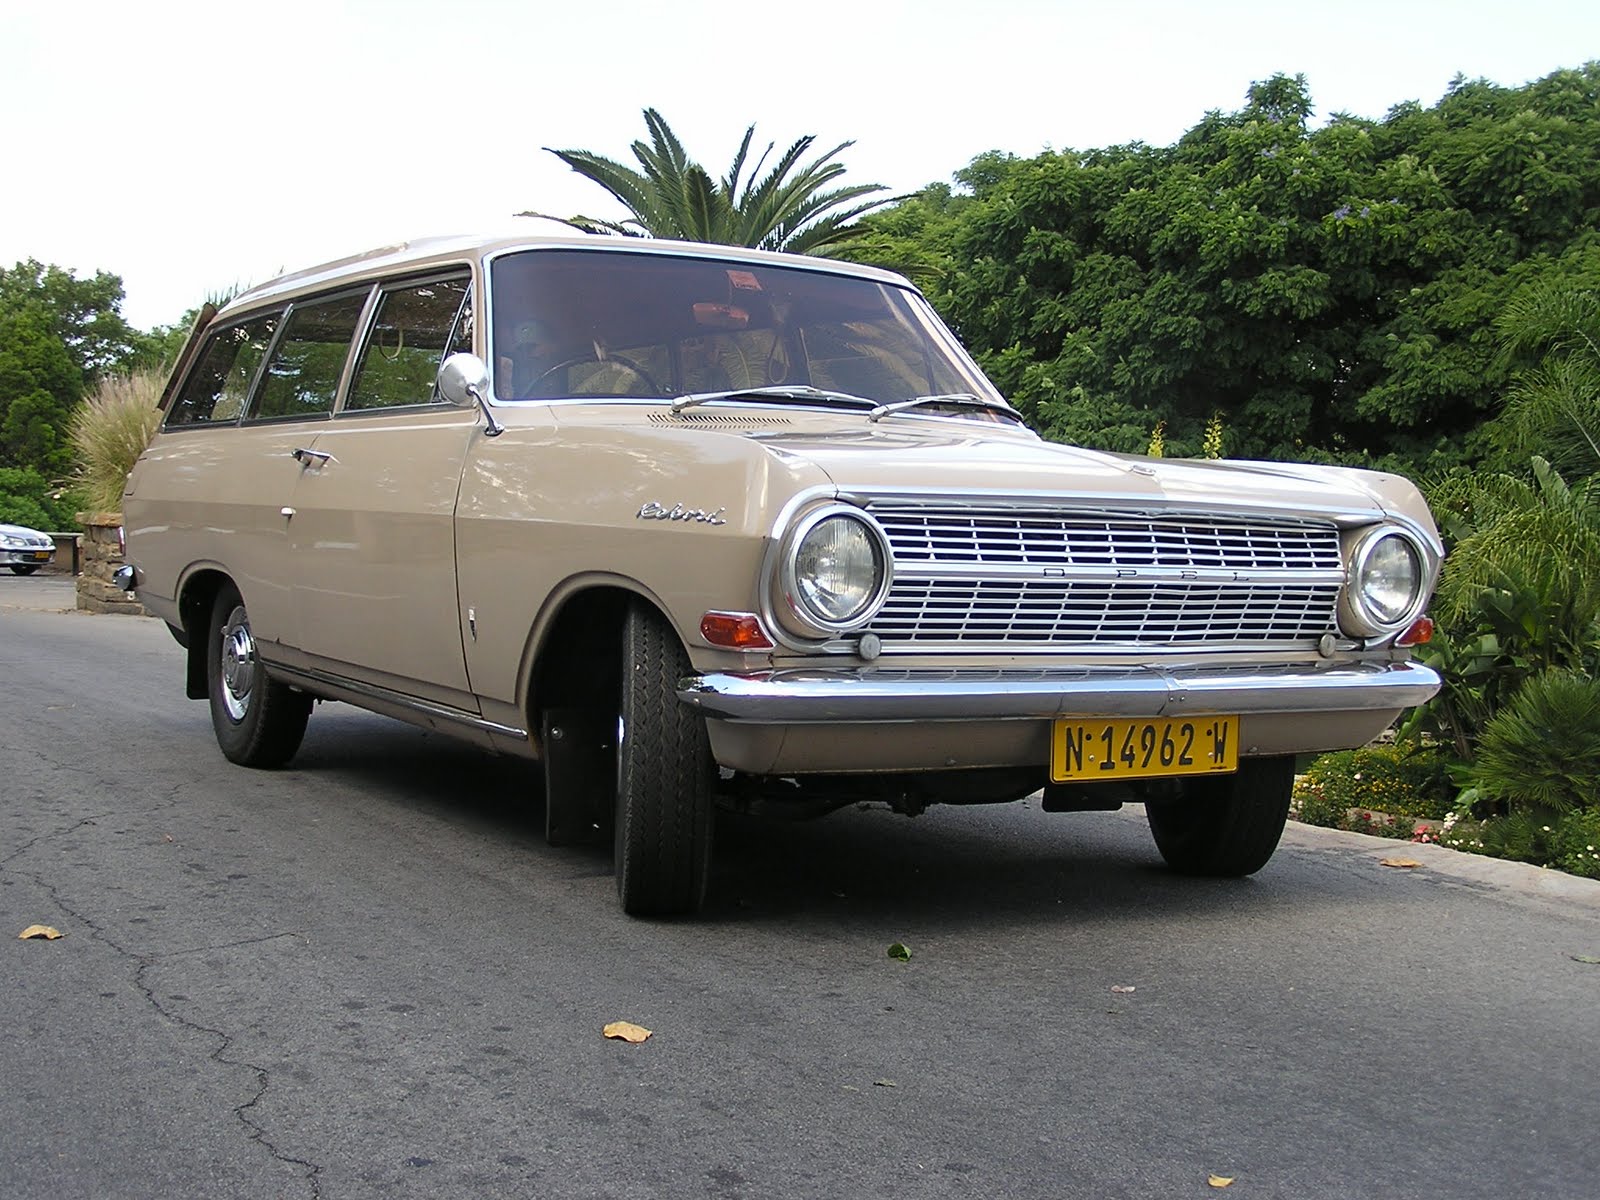 1963 Caravane Rekord de Namibie, Afrique. Année : 1963